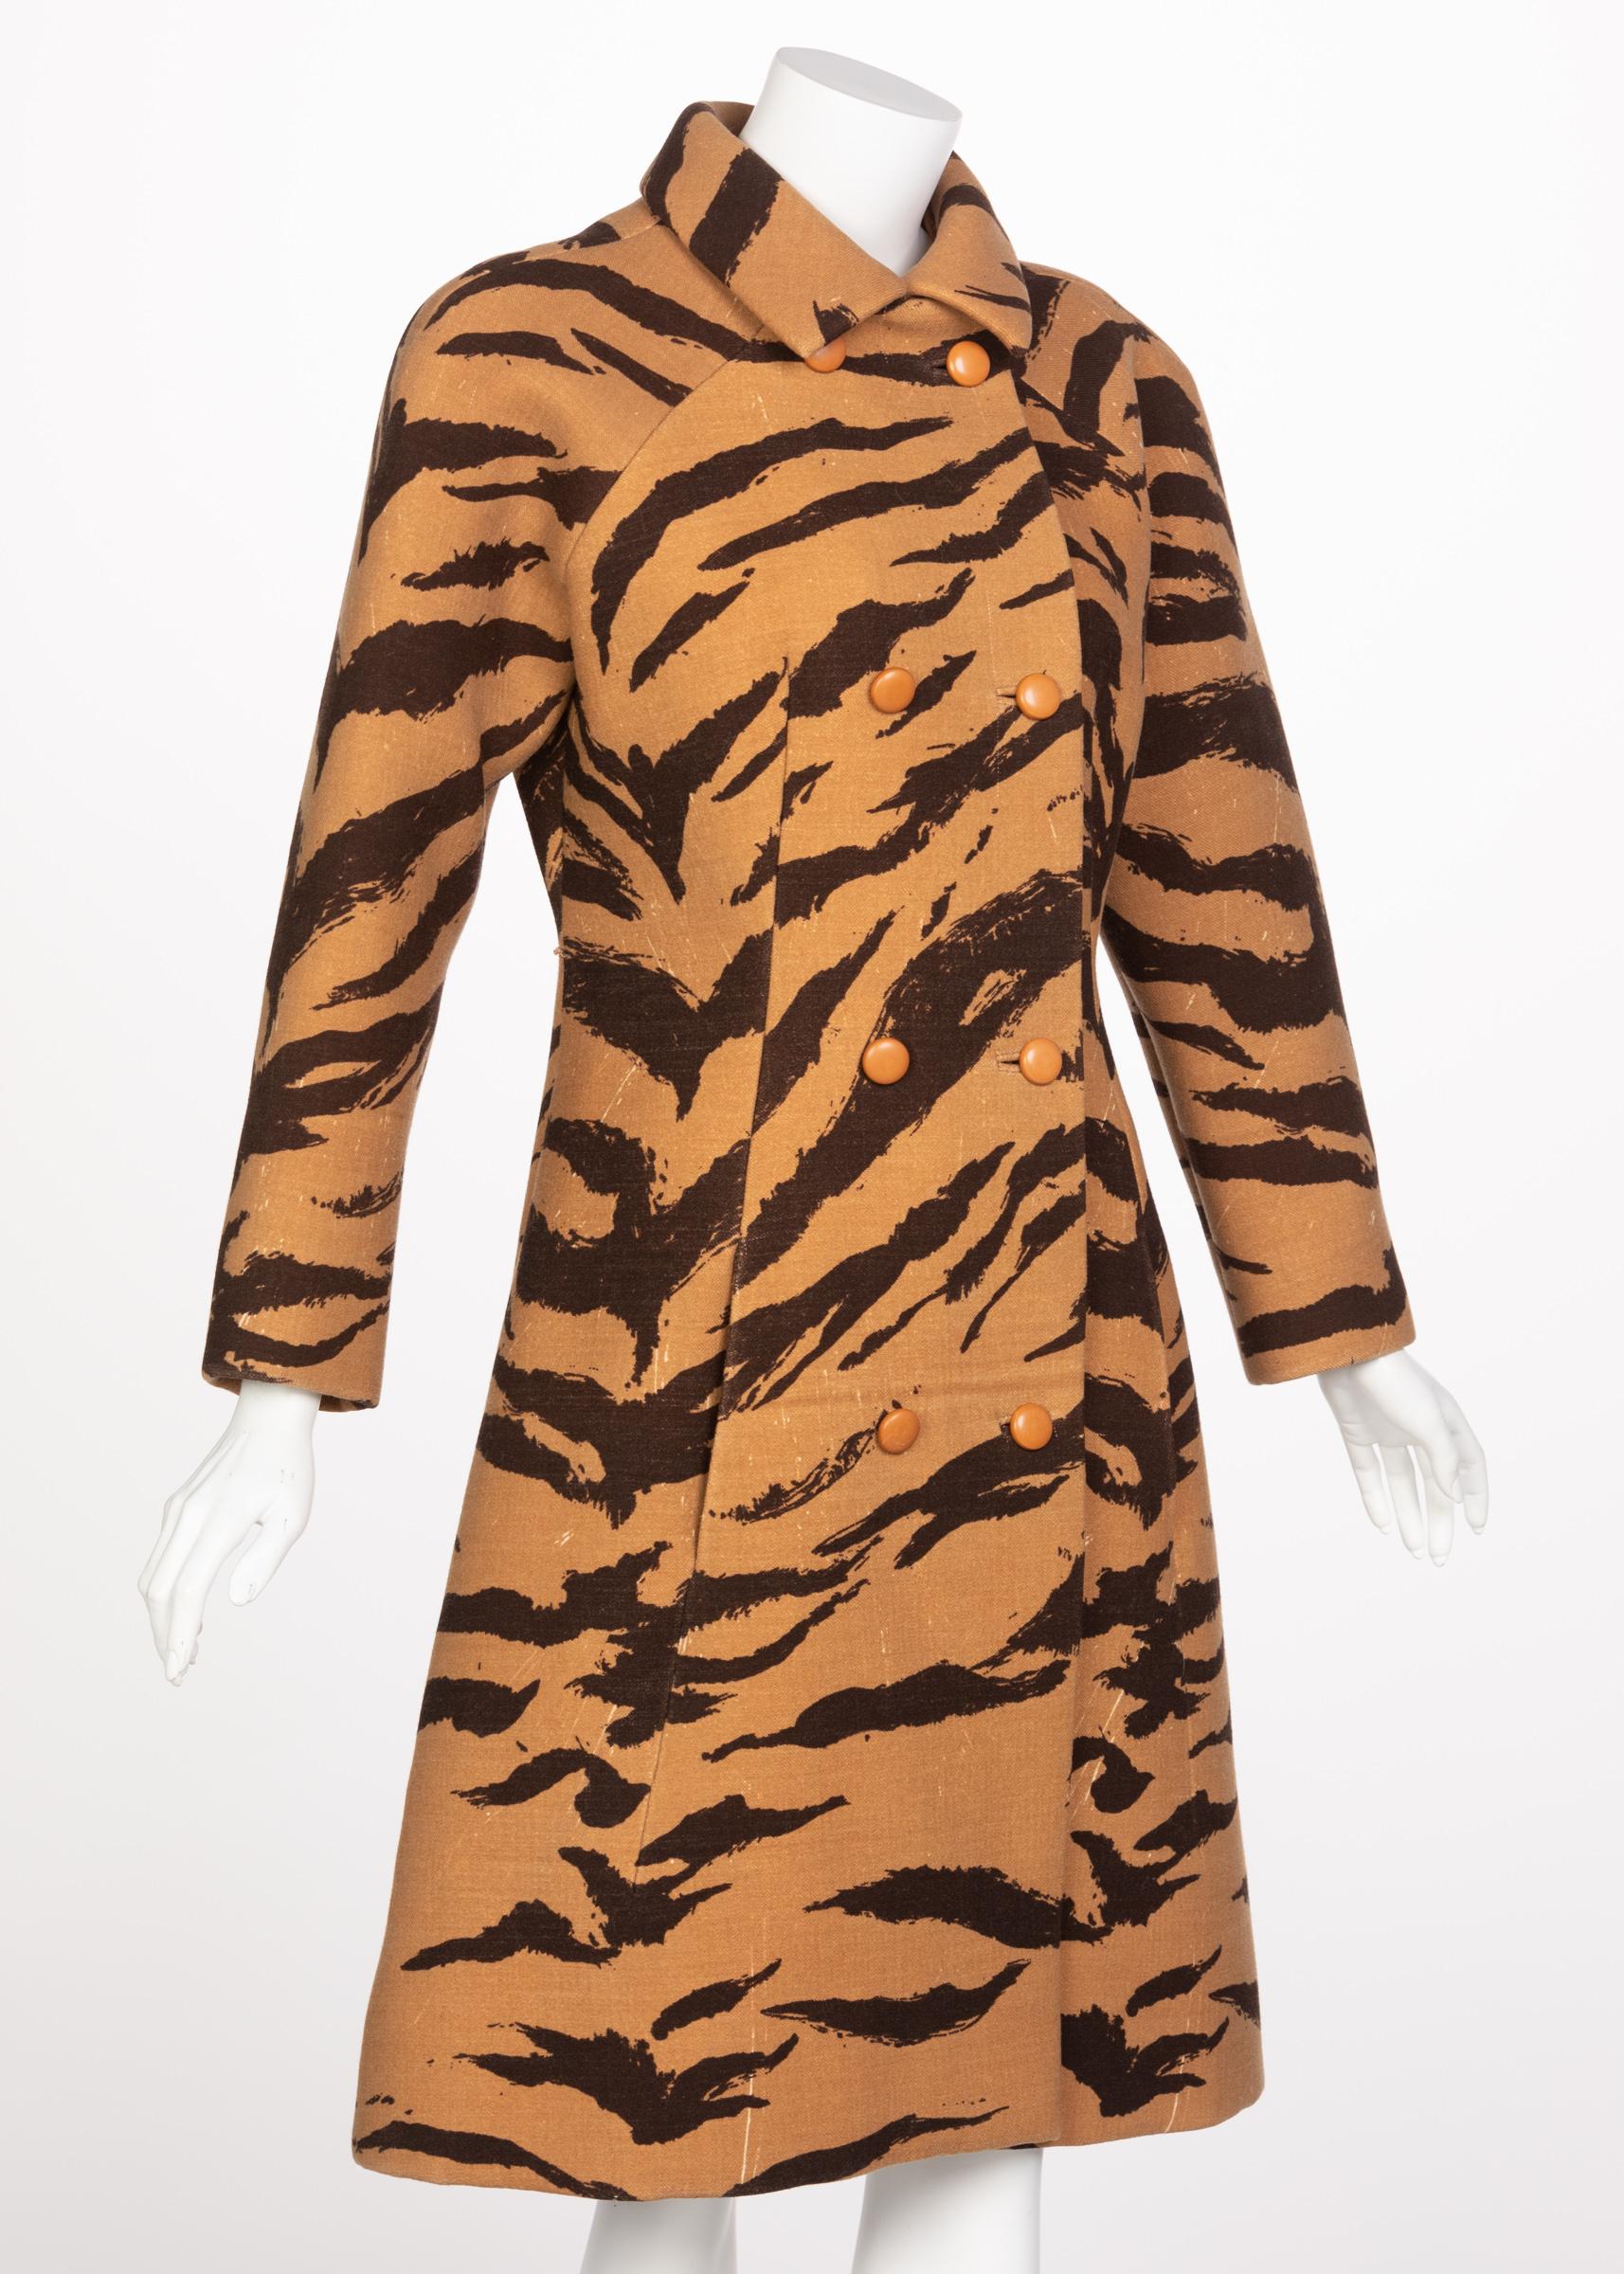 schiaparelli tiger dress